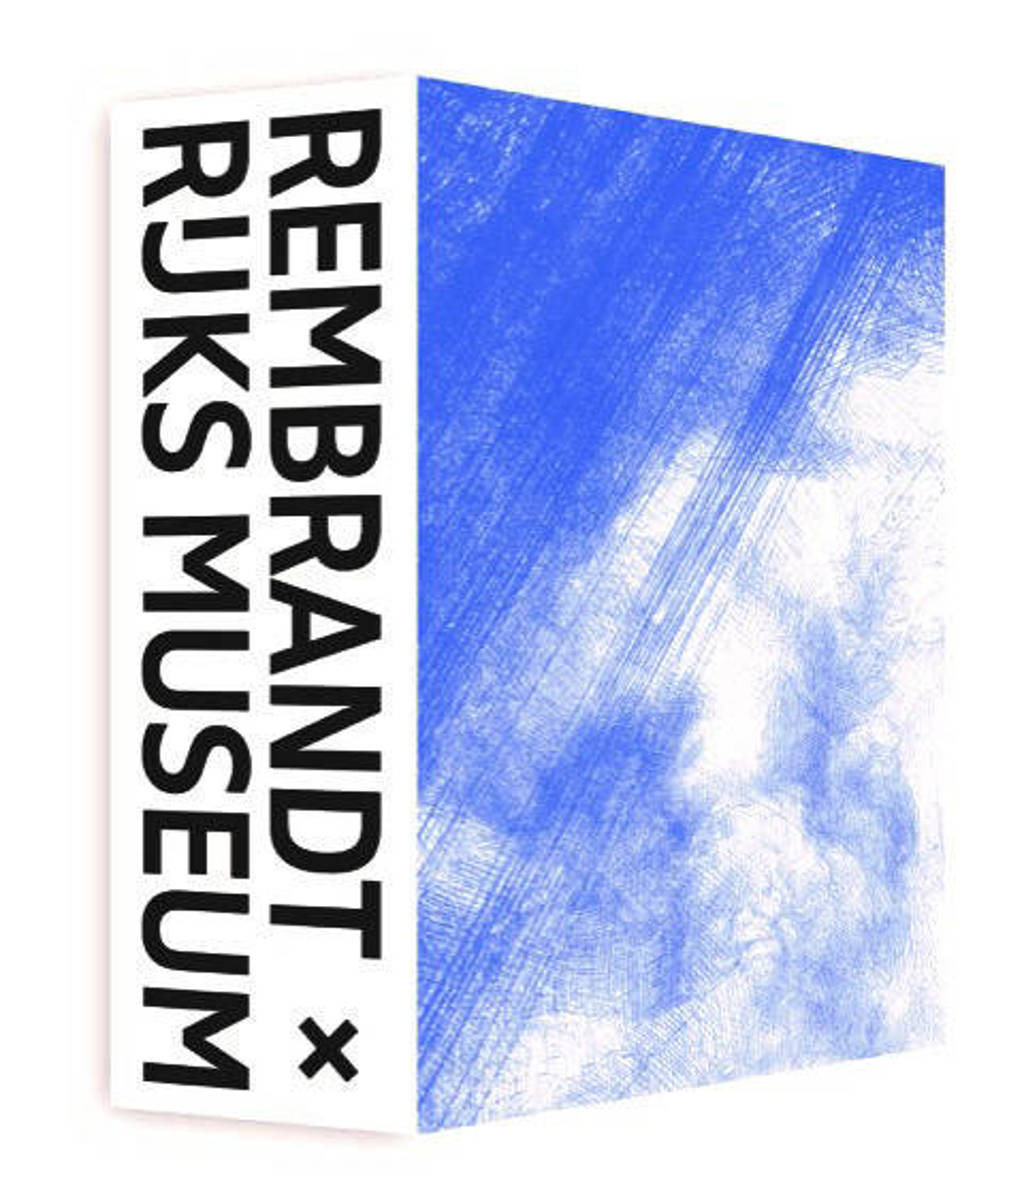 Rembrandt x Rijksmuseum | Jonathan Bikker